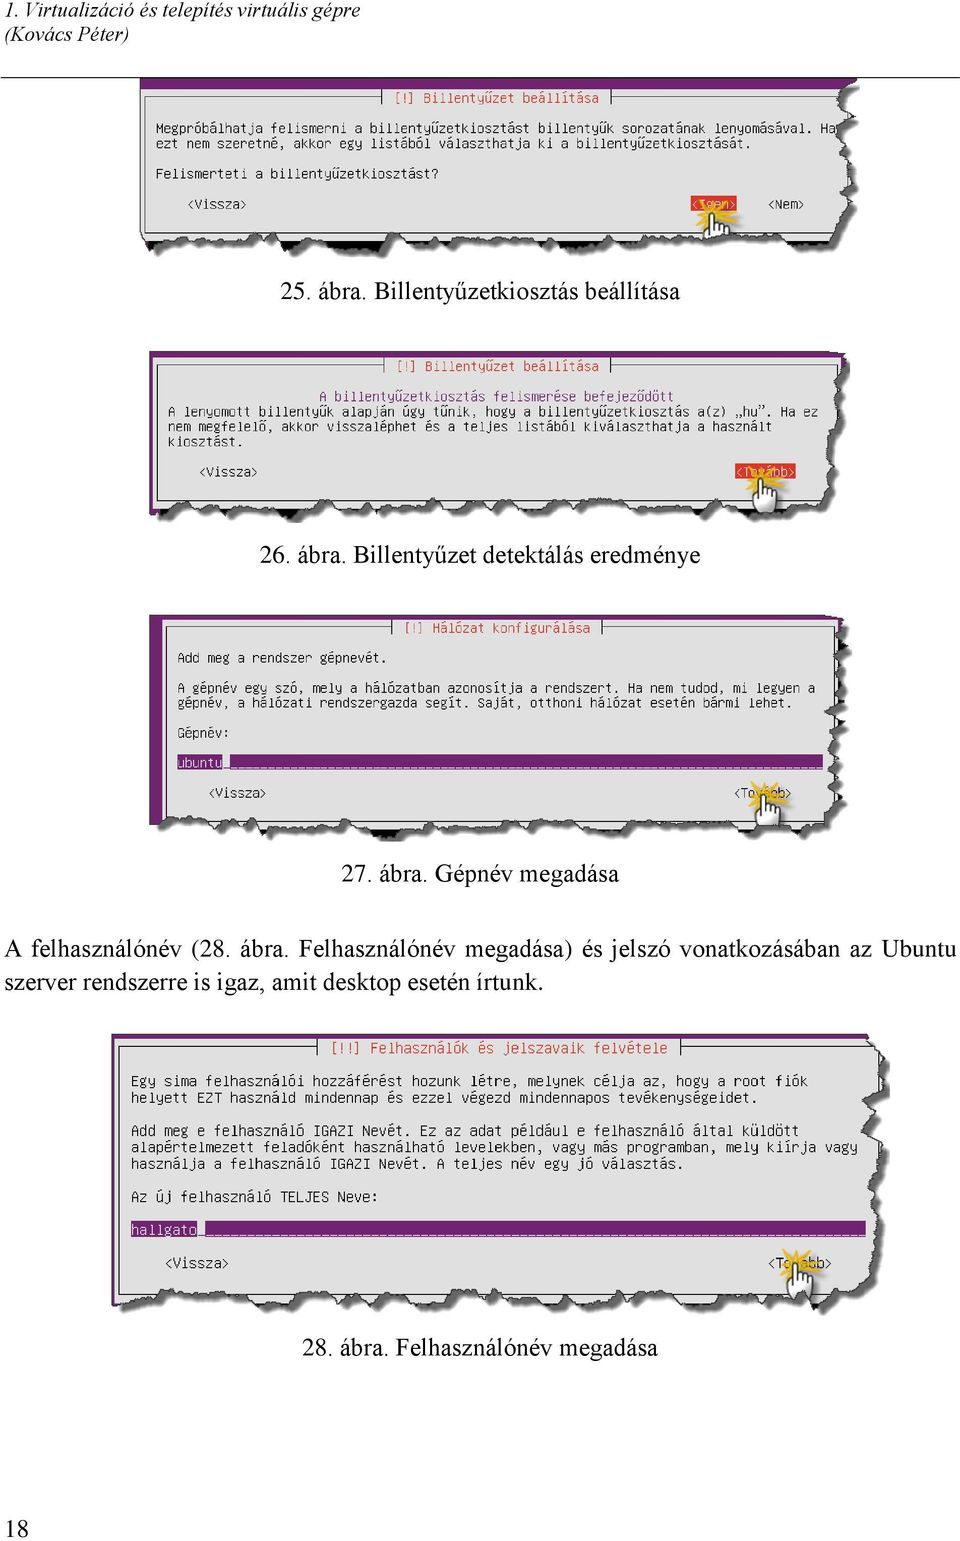 ábra. Felhasználónév megadása) és jelszó vonatkozásában az Ubuntu szerver rendszerre is